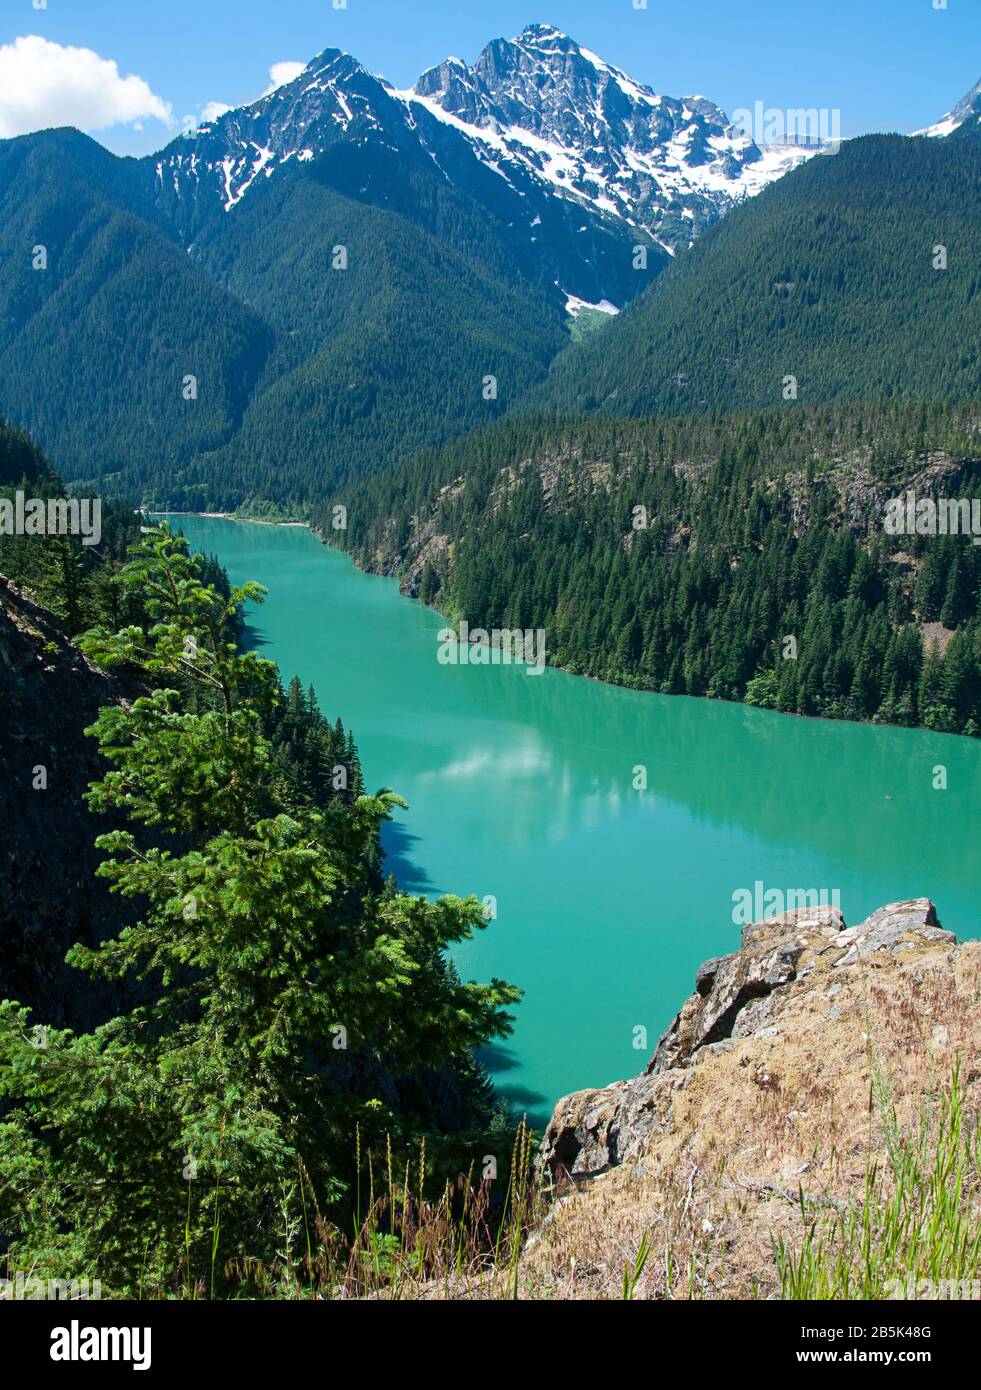 Paysage du lac Ross Washington, nature étonnante de ce lac du Nord-Ouest du Pacifique avec eau verte profonde et montagnes enneigées. Banque D'Images